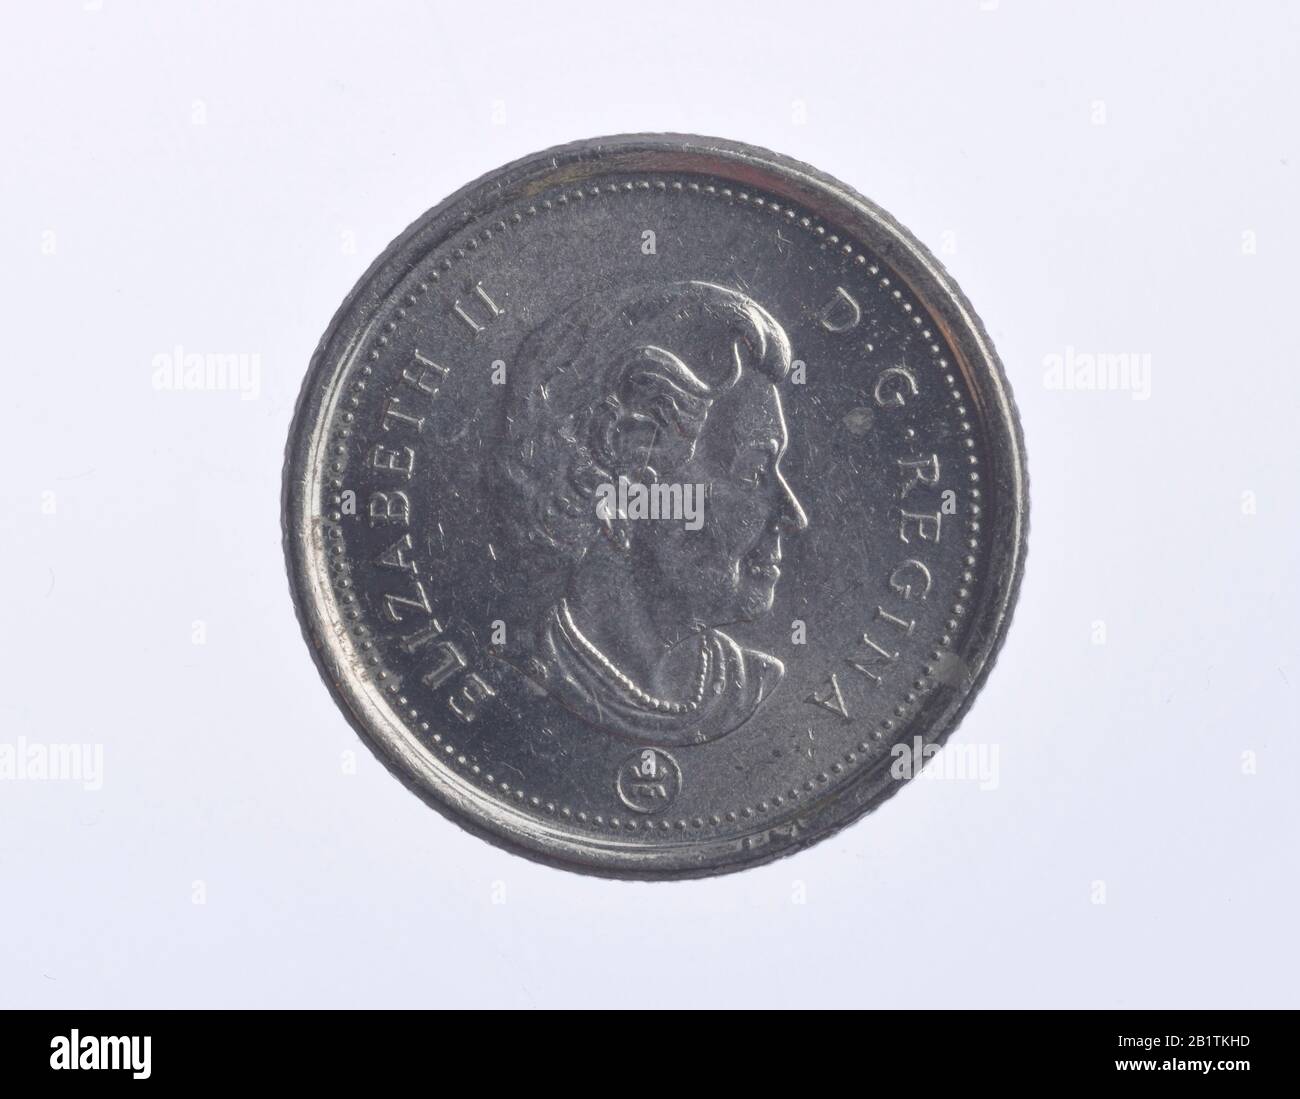 Geldmünze, 10 Cents, Kanada Stock Photo